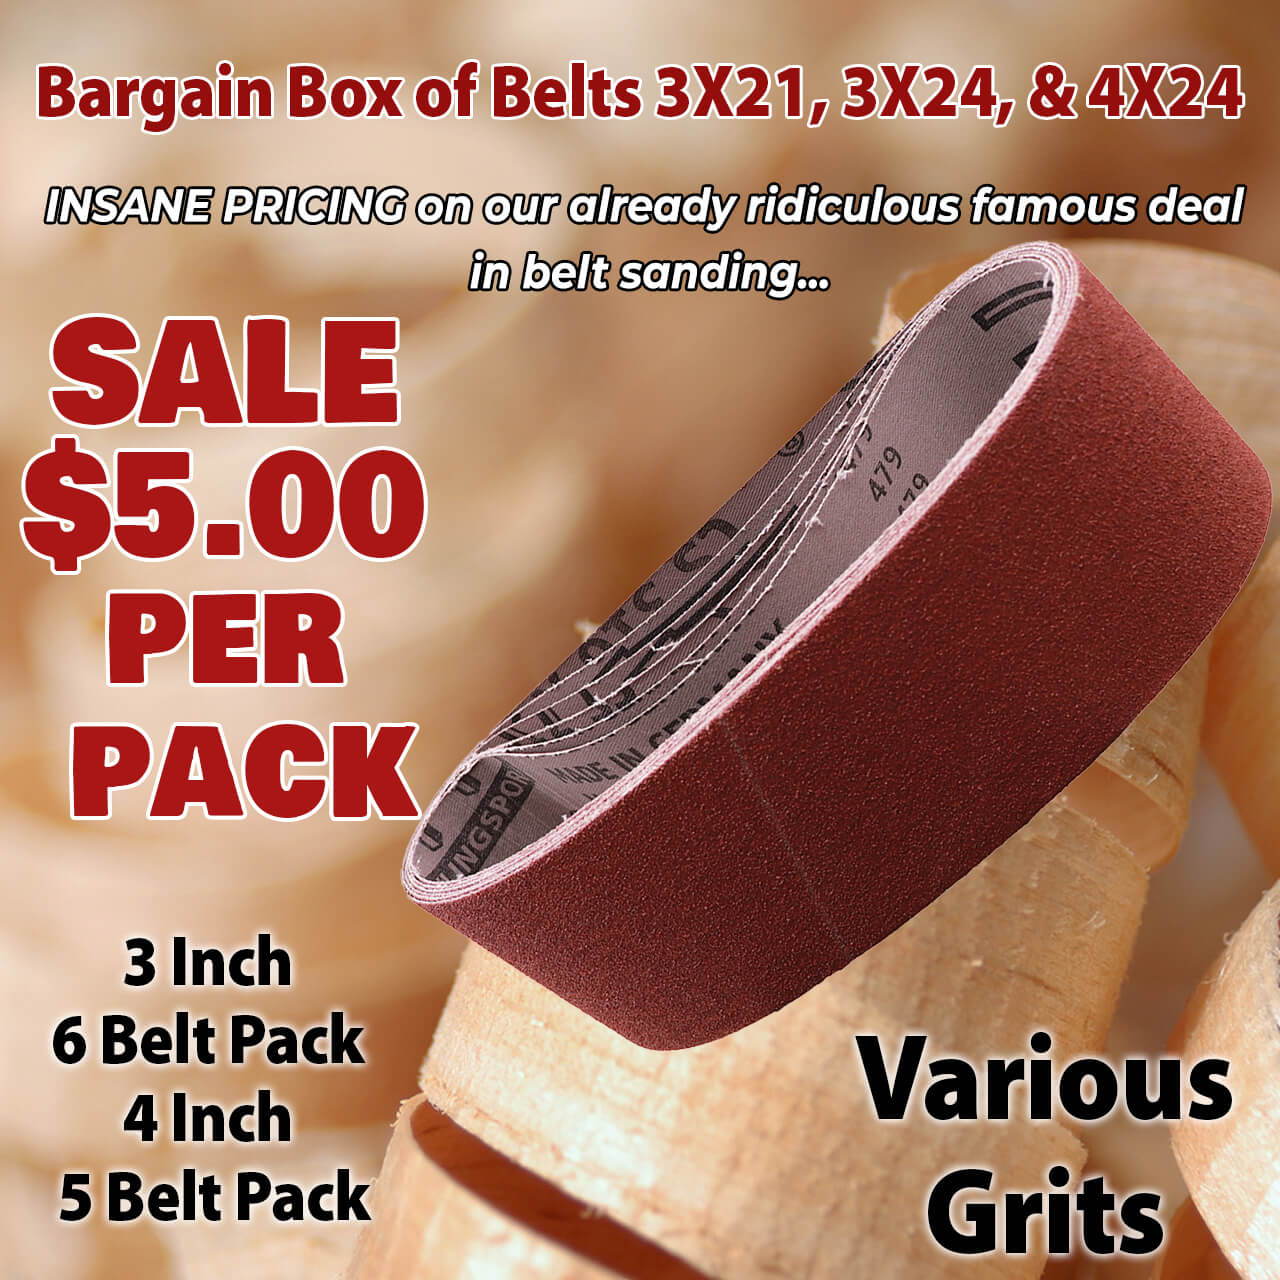 Sale $5.00 per Pack Bargain Boxes